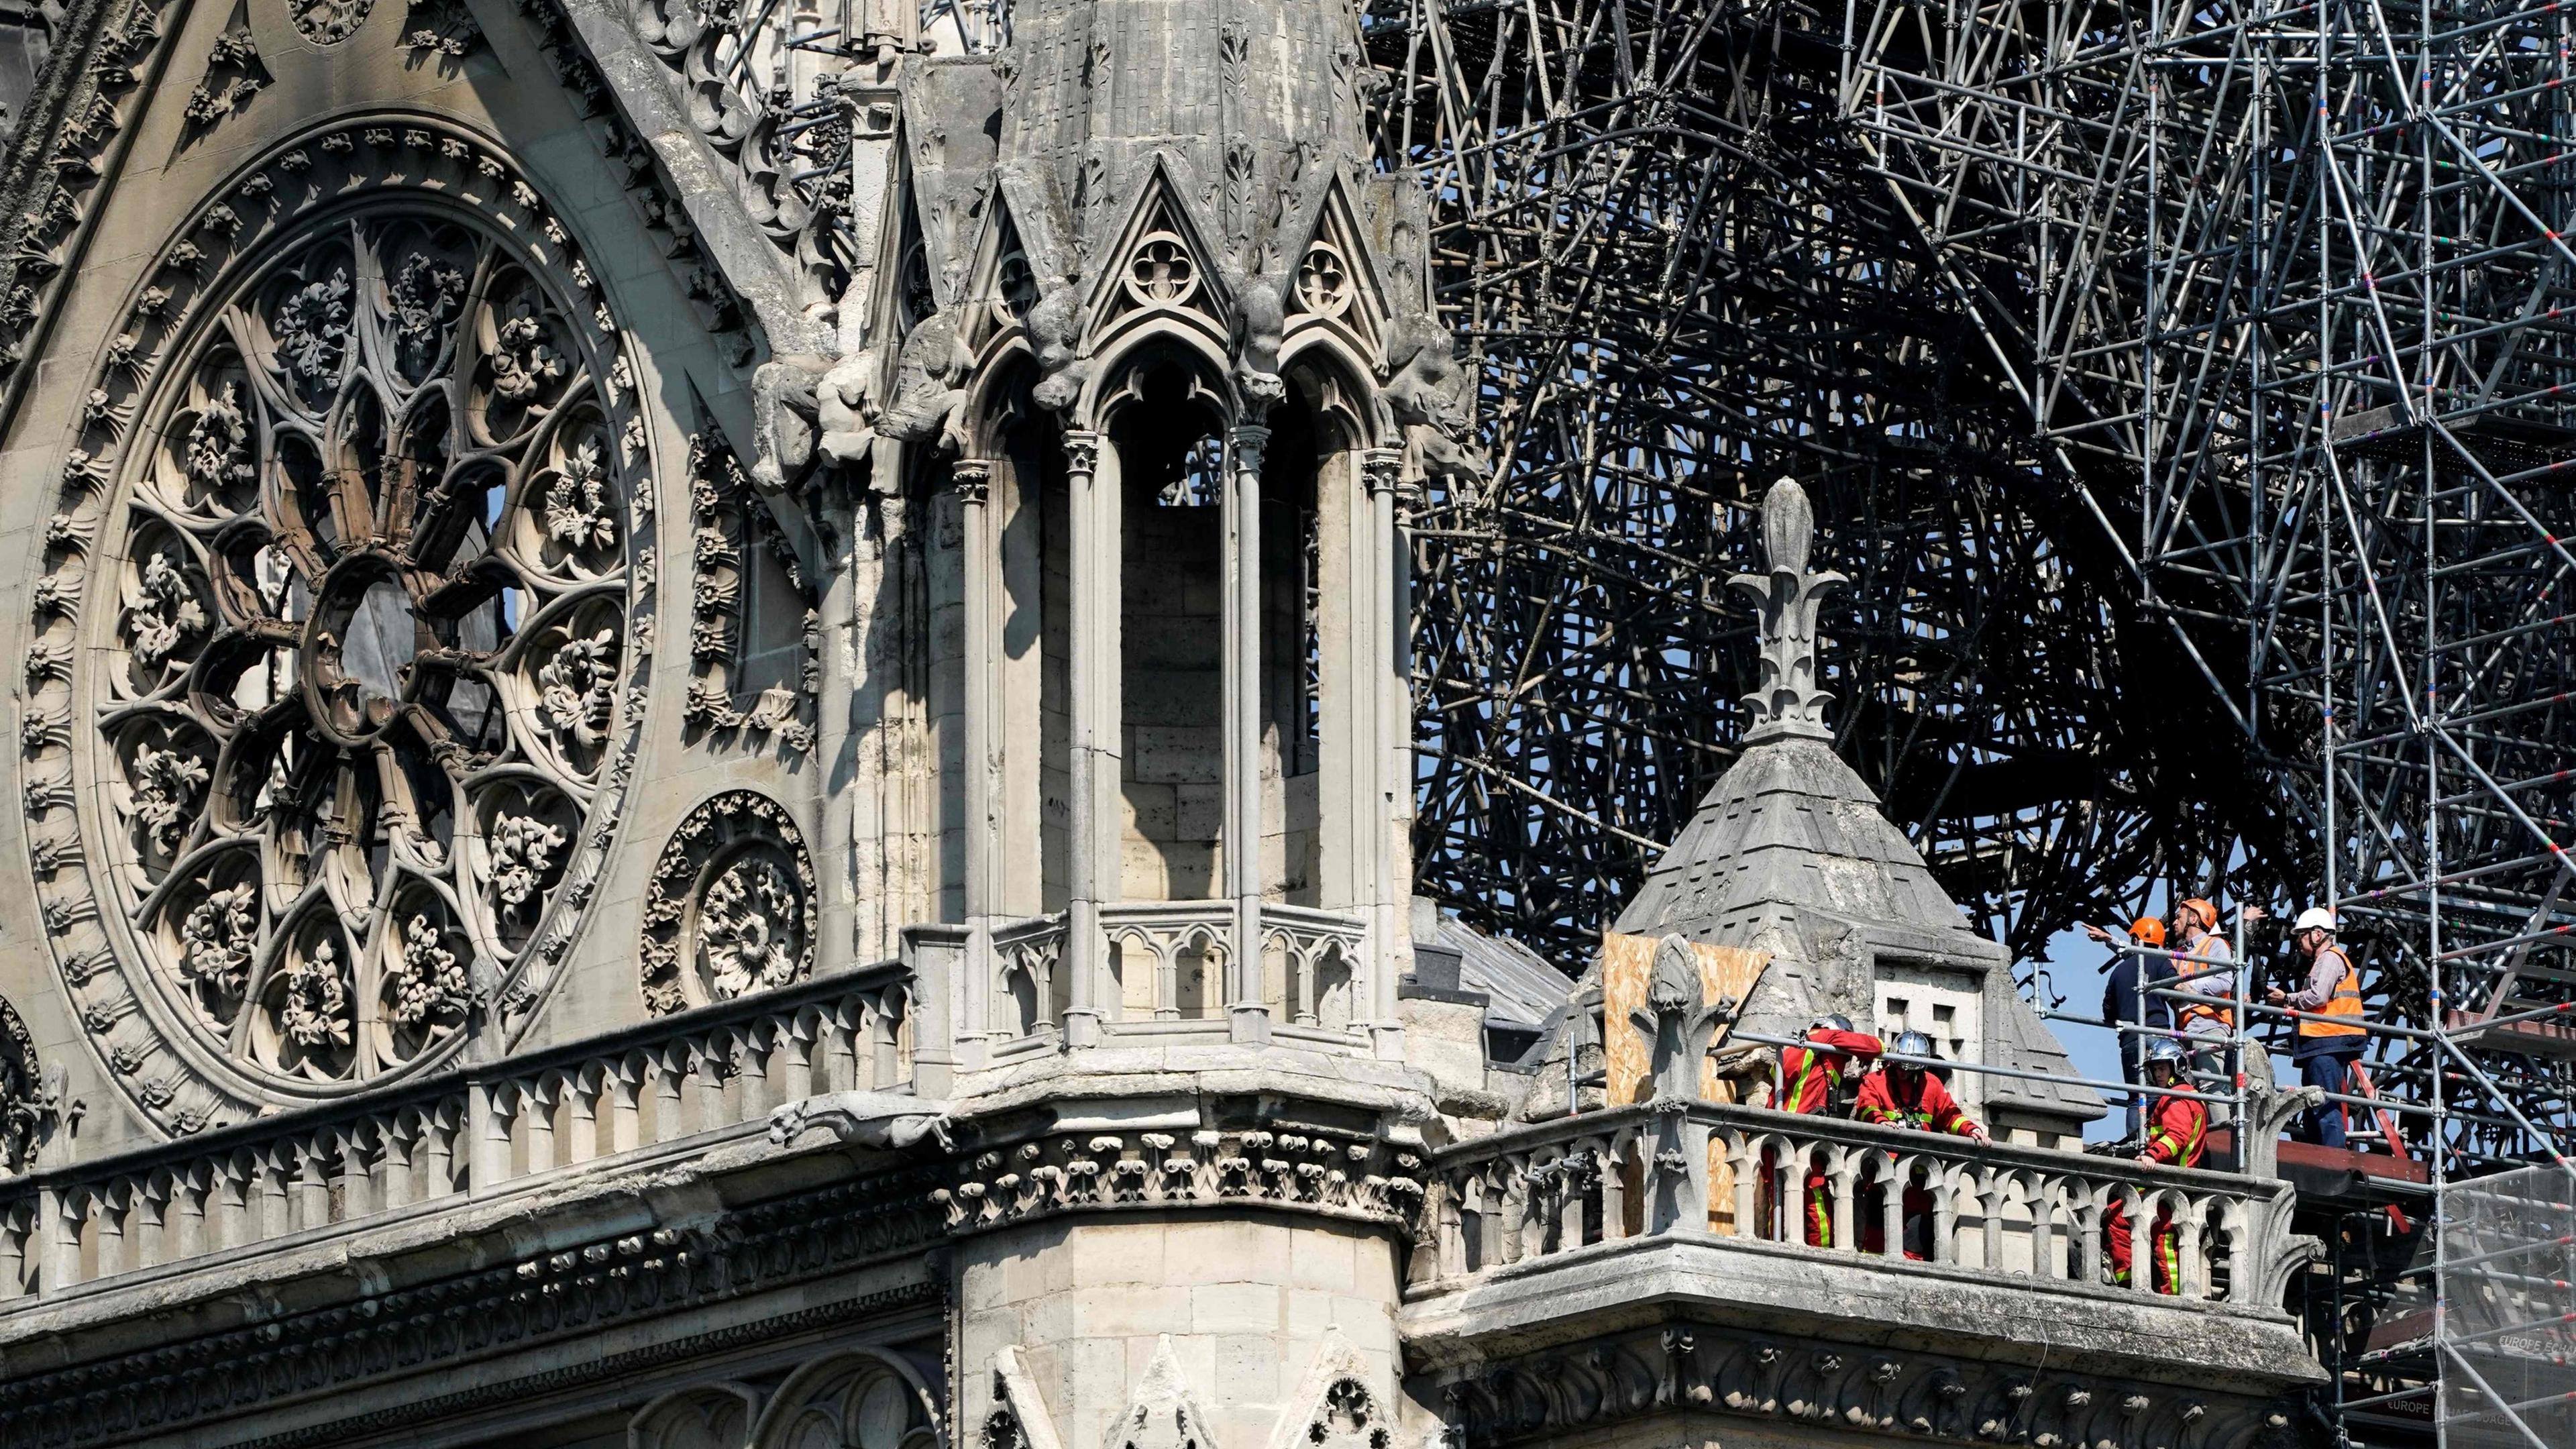 Frankreich 10 Euro Silbermünze 2019 Wiederaufbau der Notre-Dame